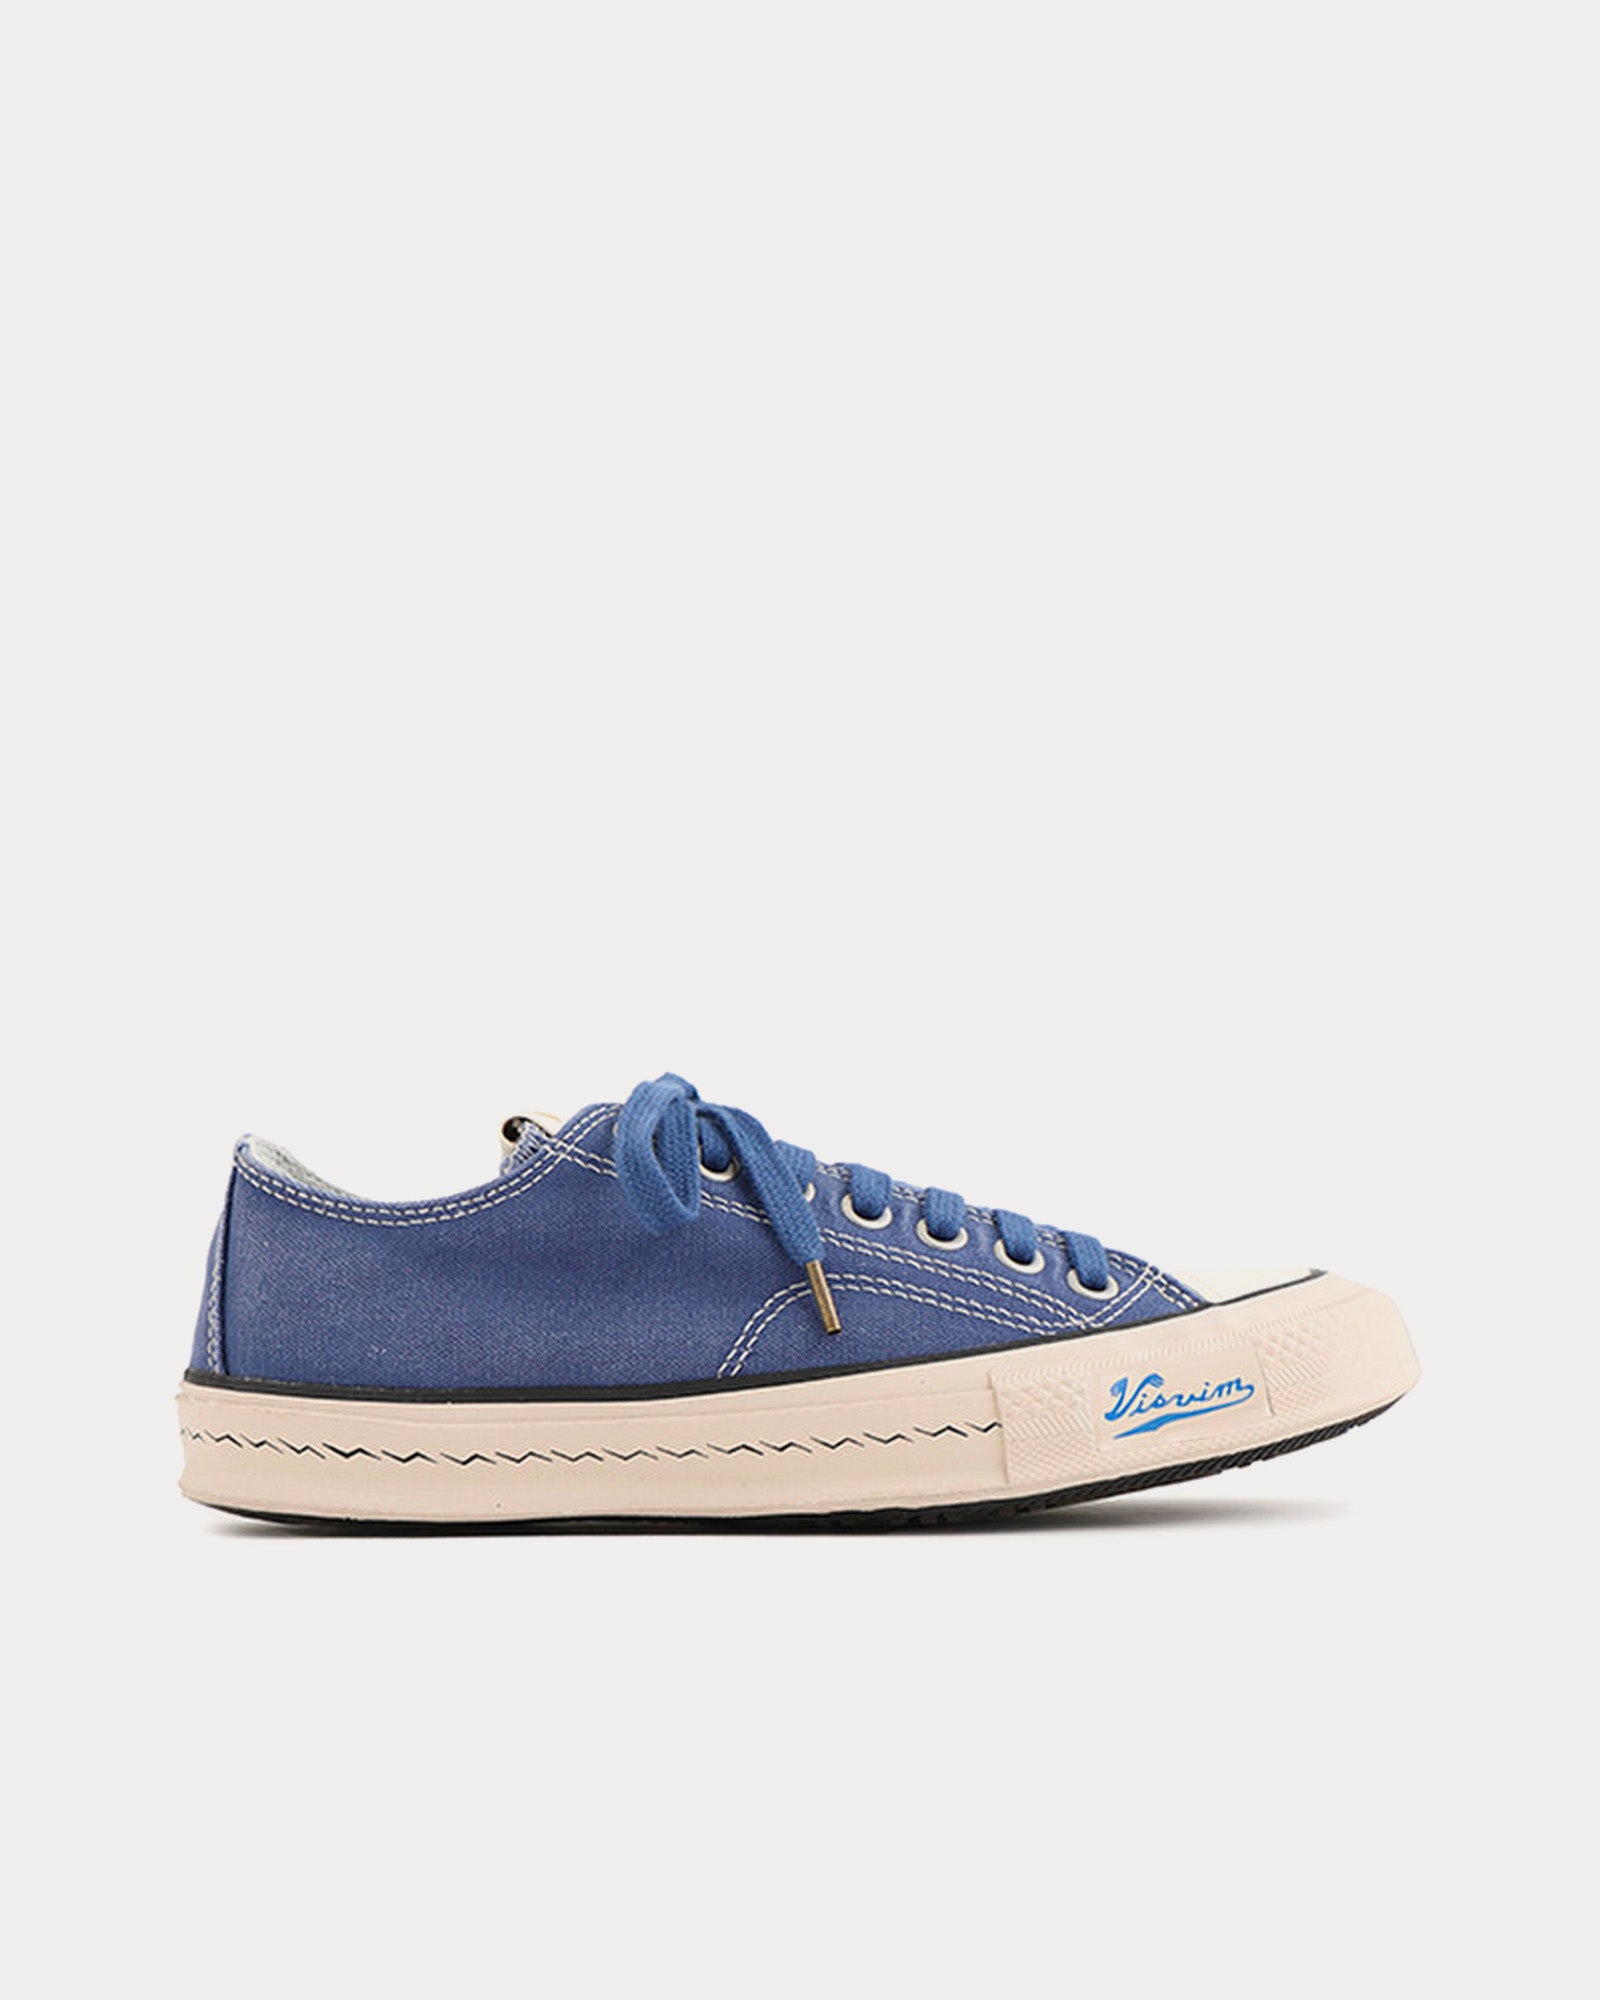 Visvim - Skagway Lo Canvas Blue Low Top Sneakers